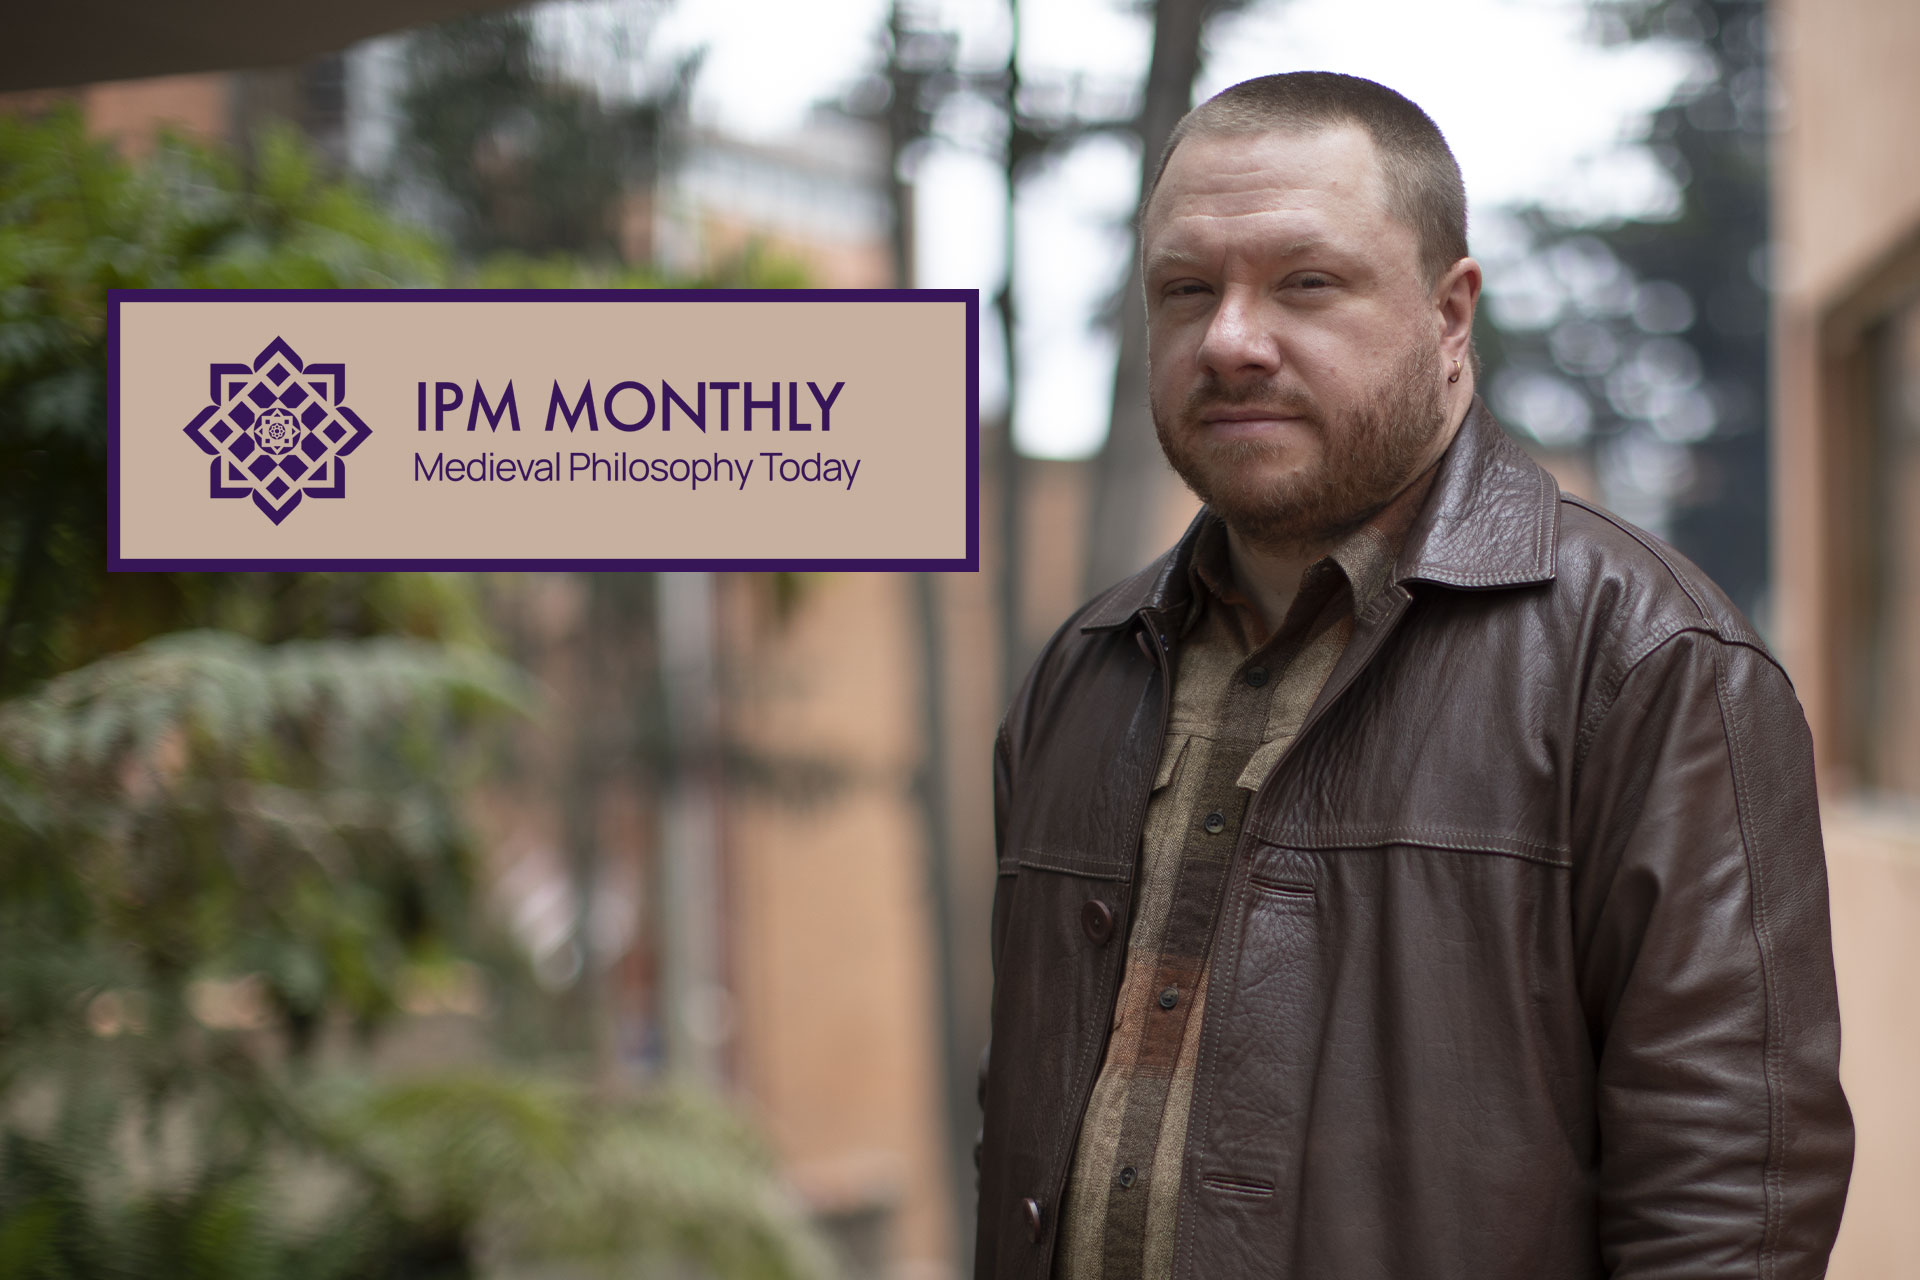 Entrevista de IPM Monthly a nuestro profesor Nicolás Vaughan